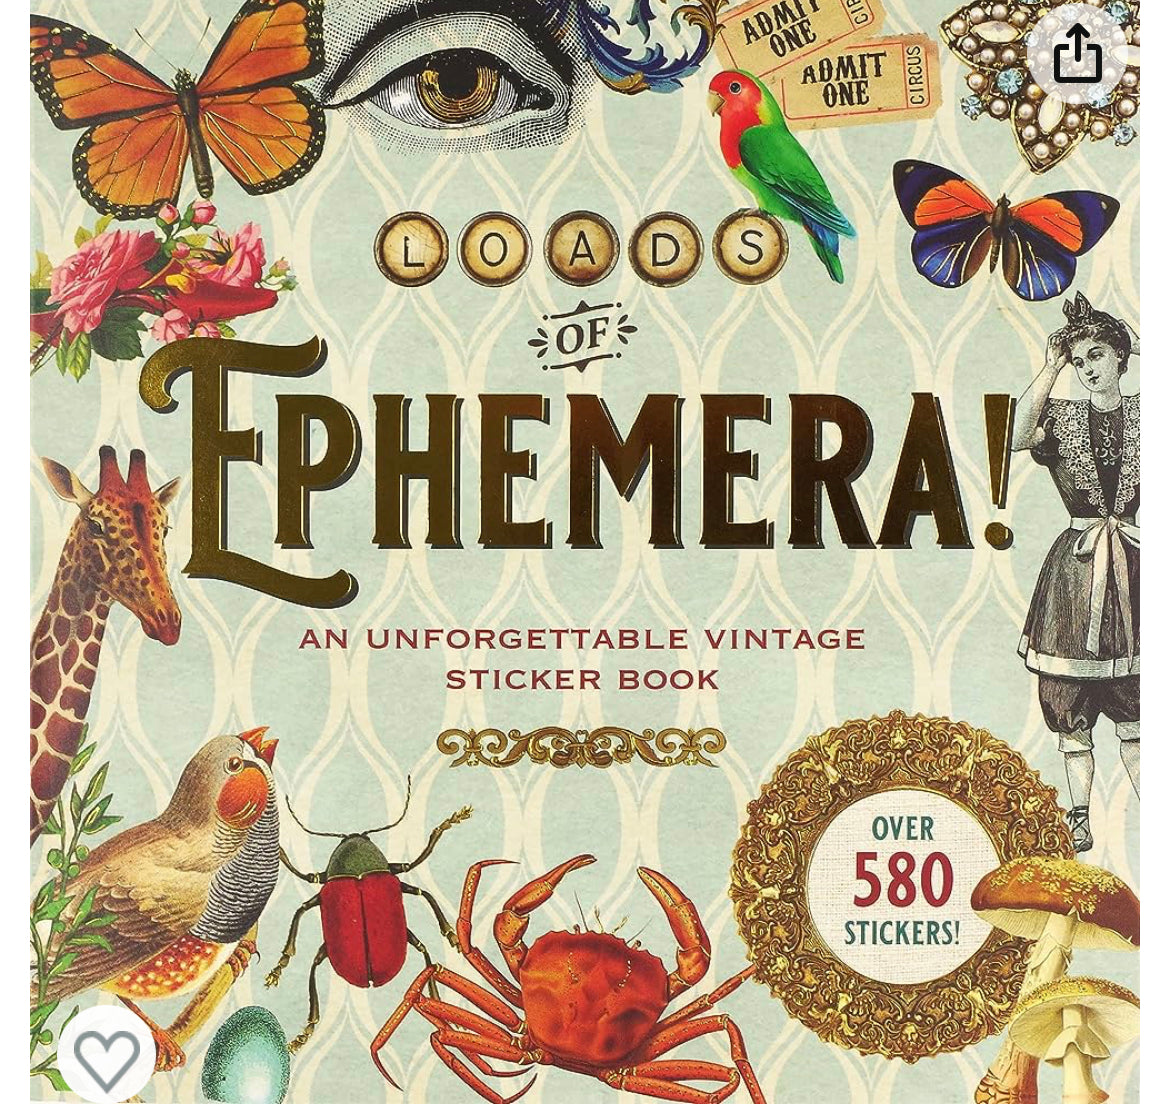 LOADS OF EPHEMERA VINTAGE STICKER BOOK